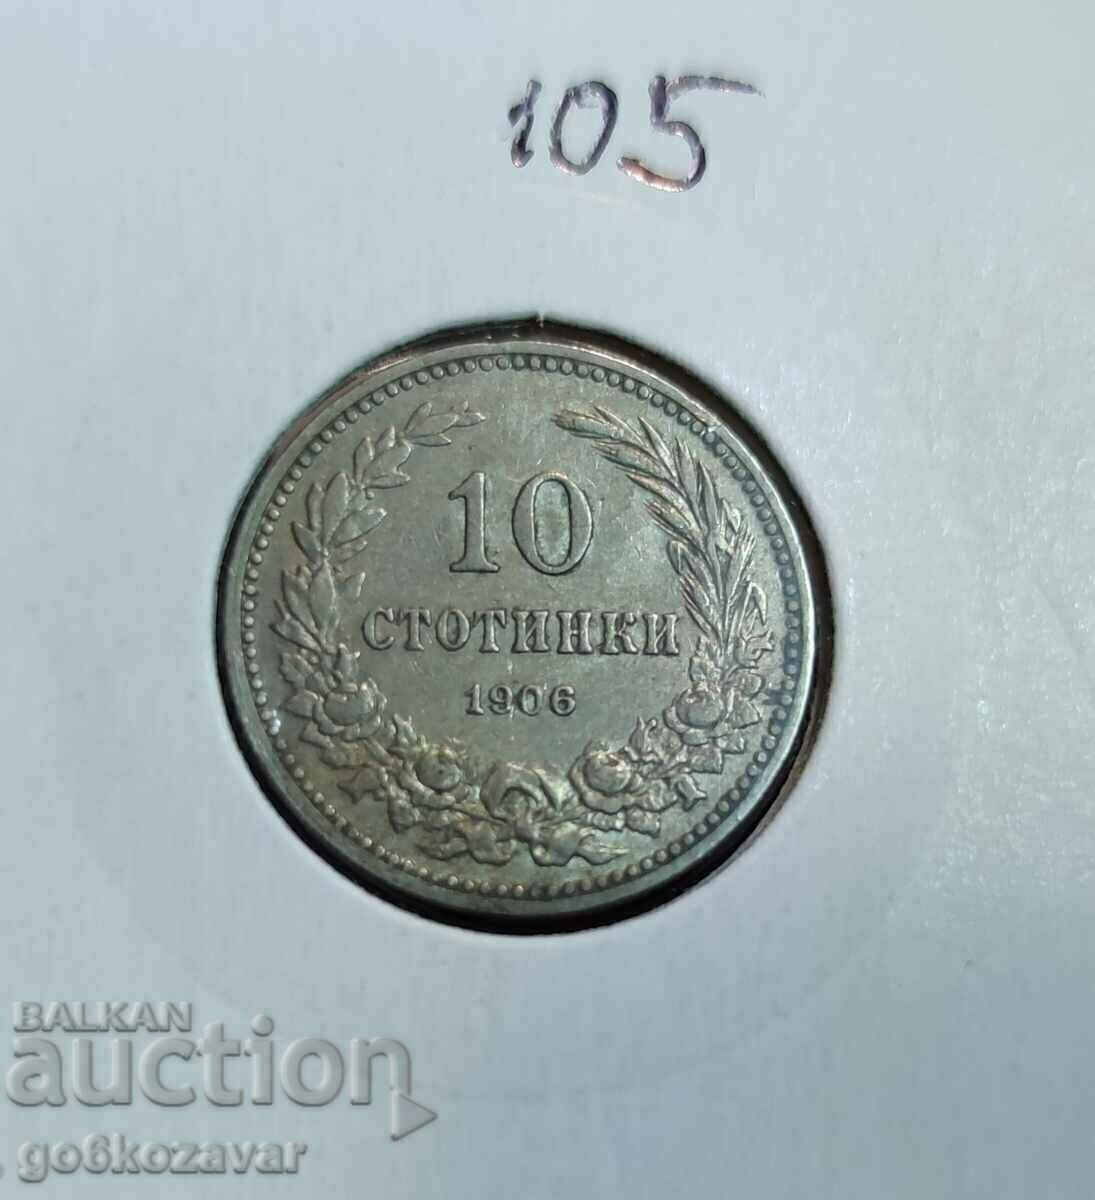 Bulgaria 10 cenți 1906 Excelent! Colectie!